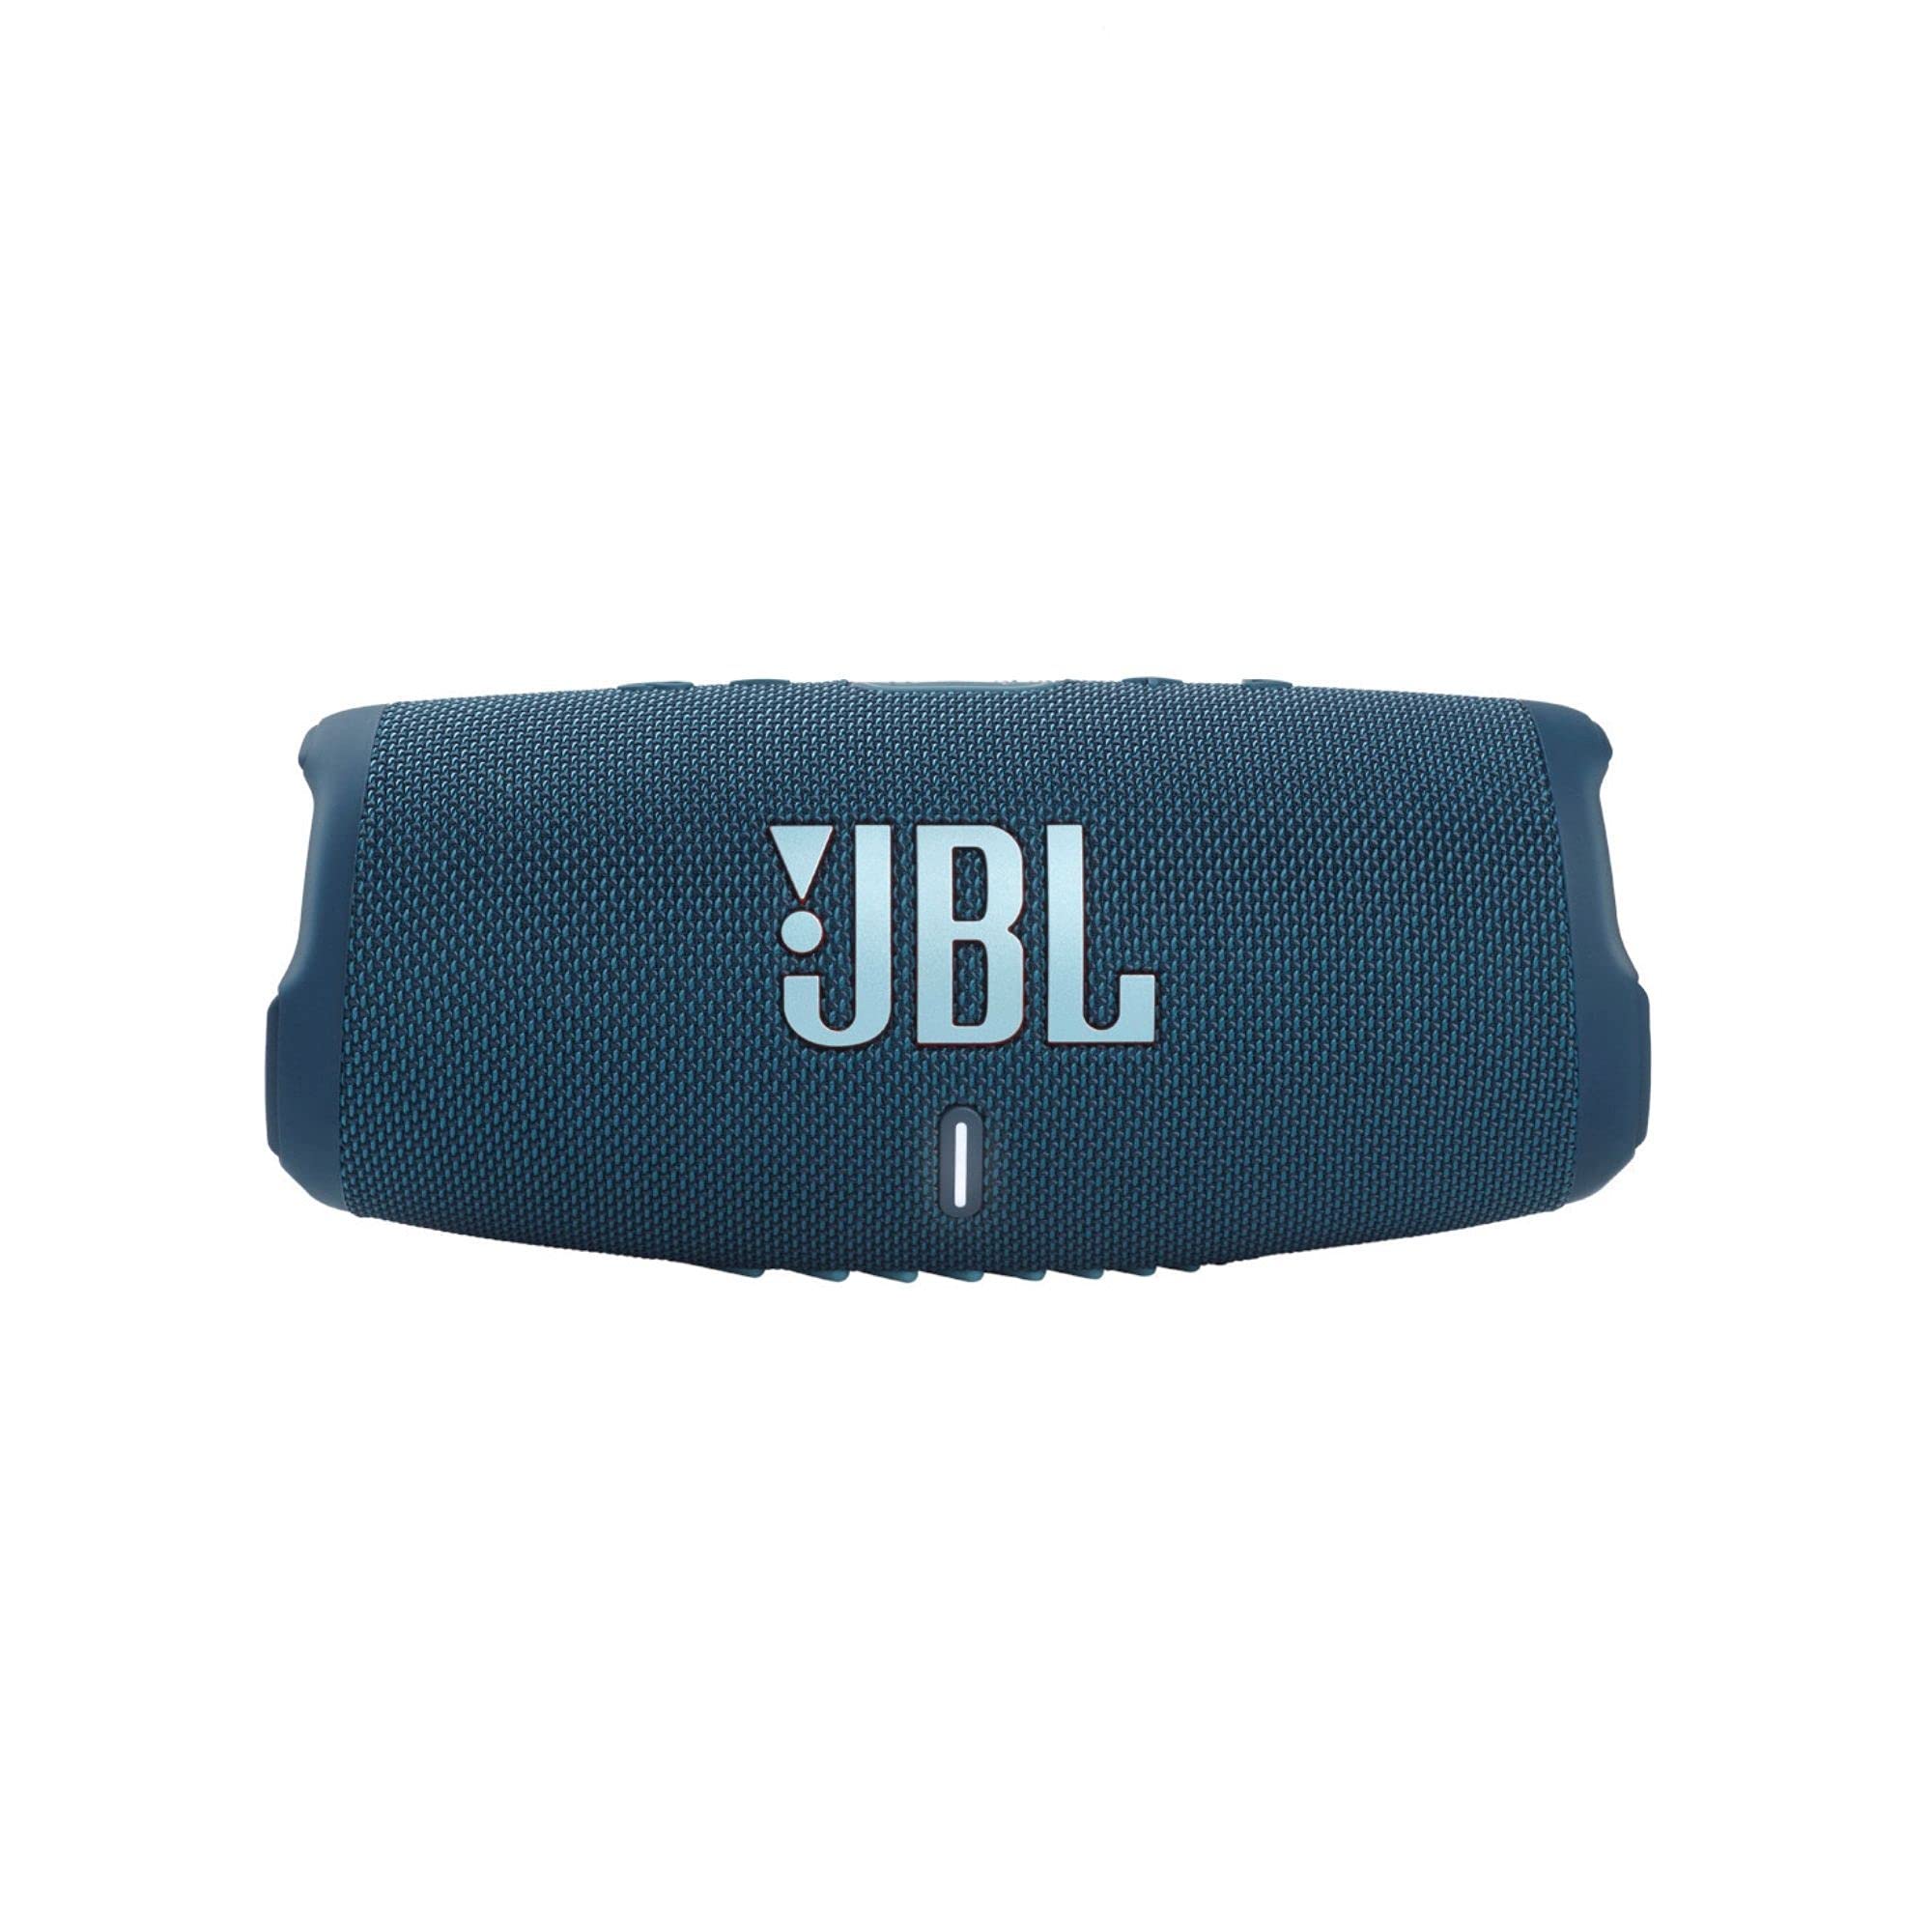 JBL Charge 5 - Altavoz Bluetooth portátil con IP67 a prueba de agua y carga USB - Azul (renovado)